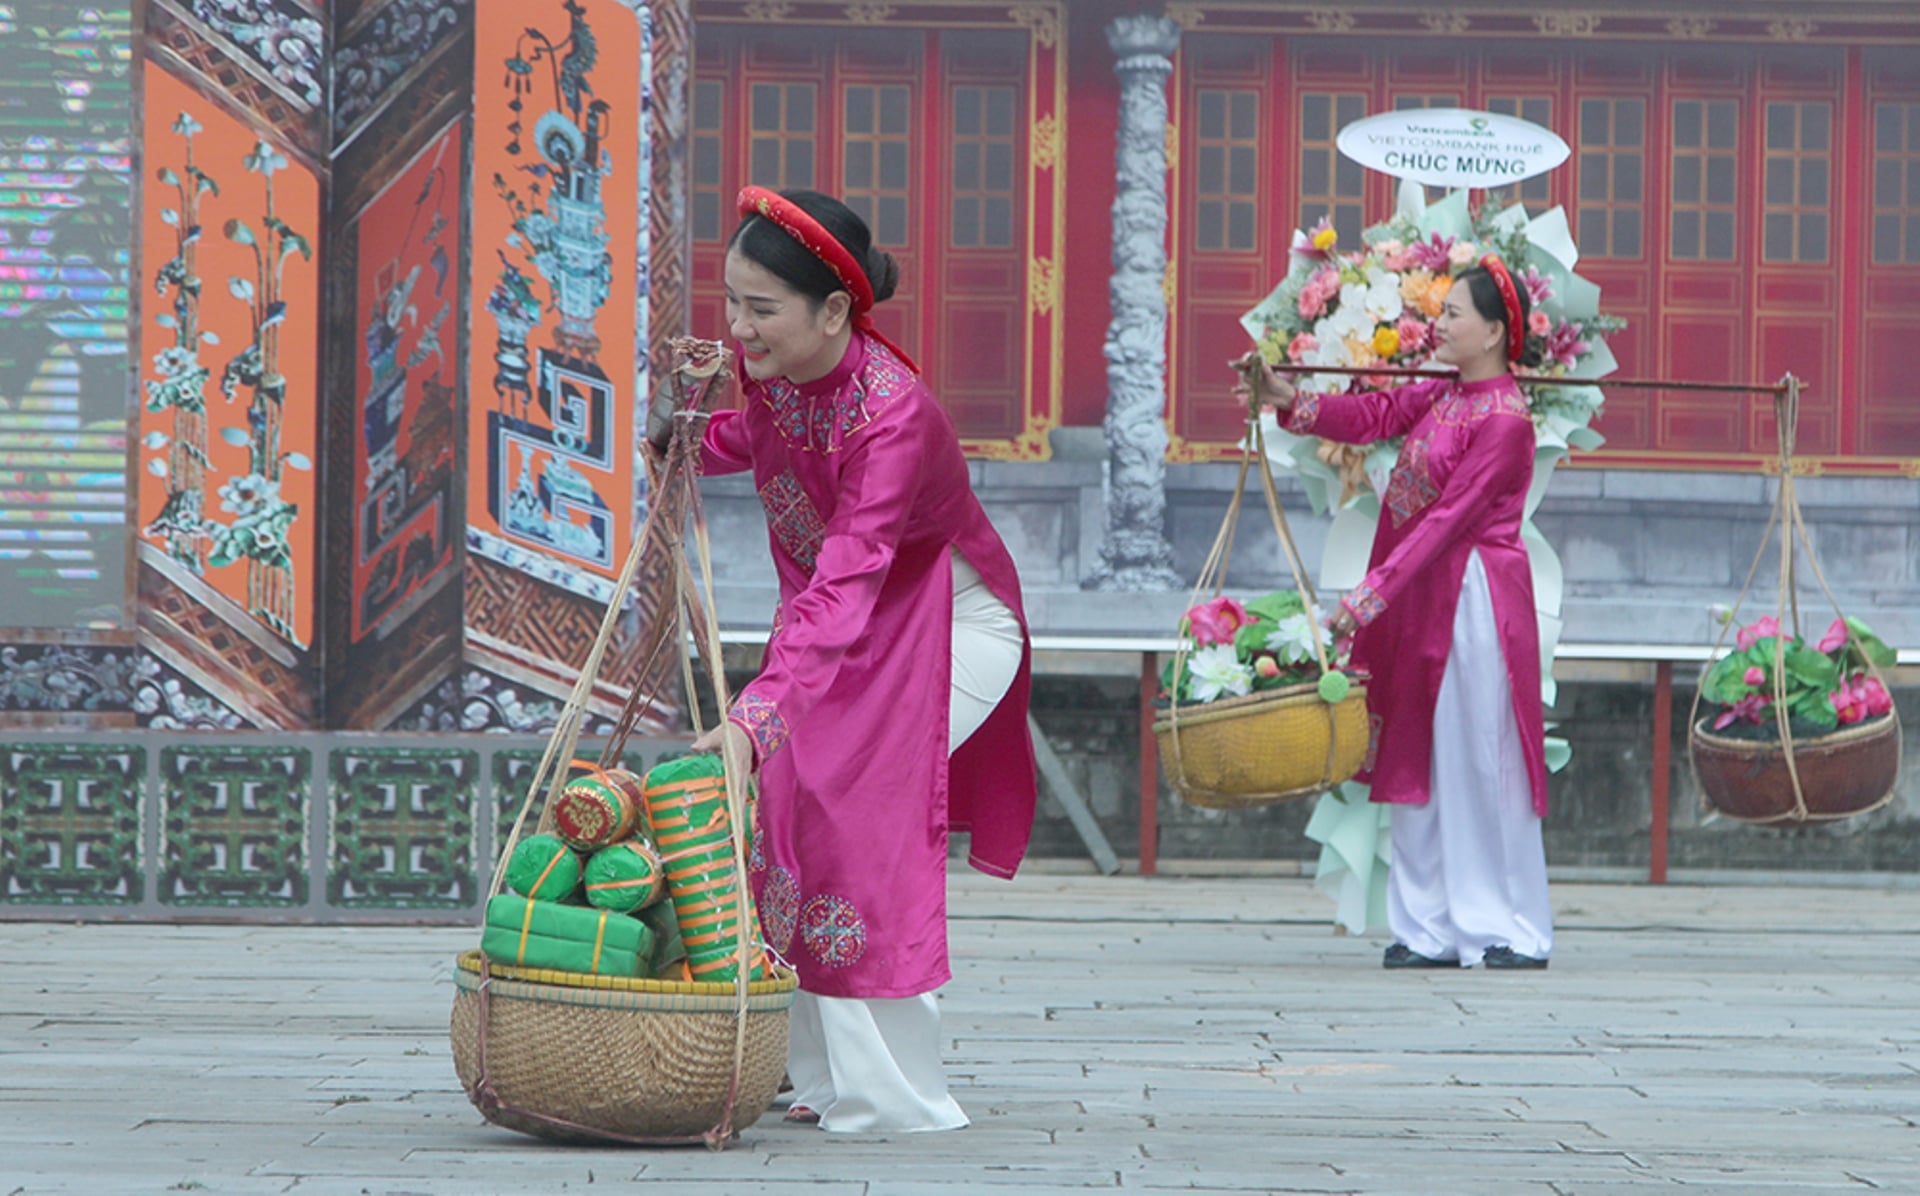 Vào Hoàng cung Huế xem nhiều hoạt động biểu diễn nghệ thuật miễn phí - 2